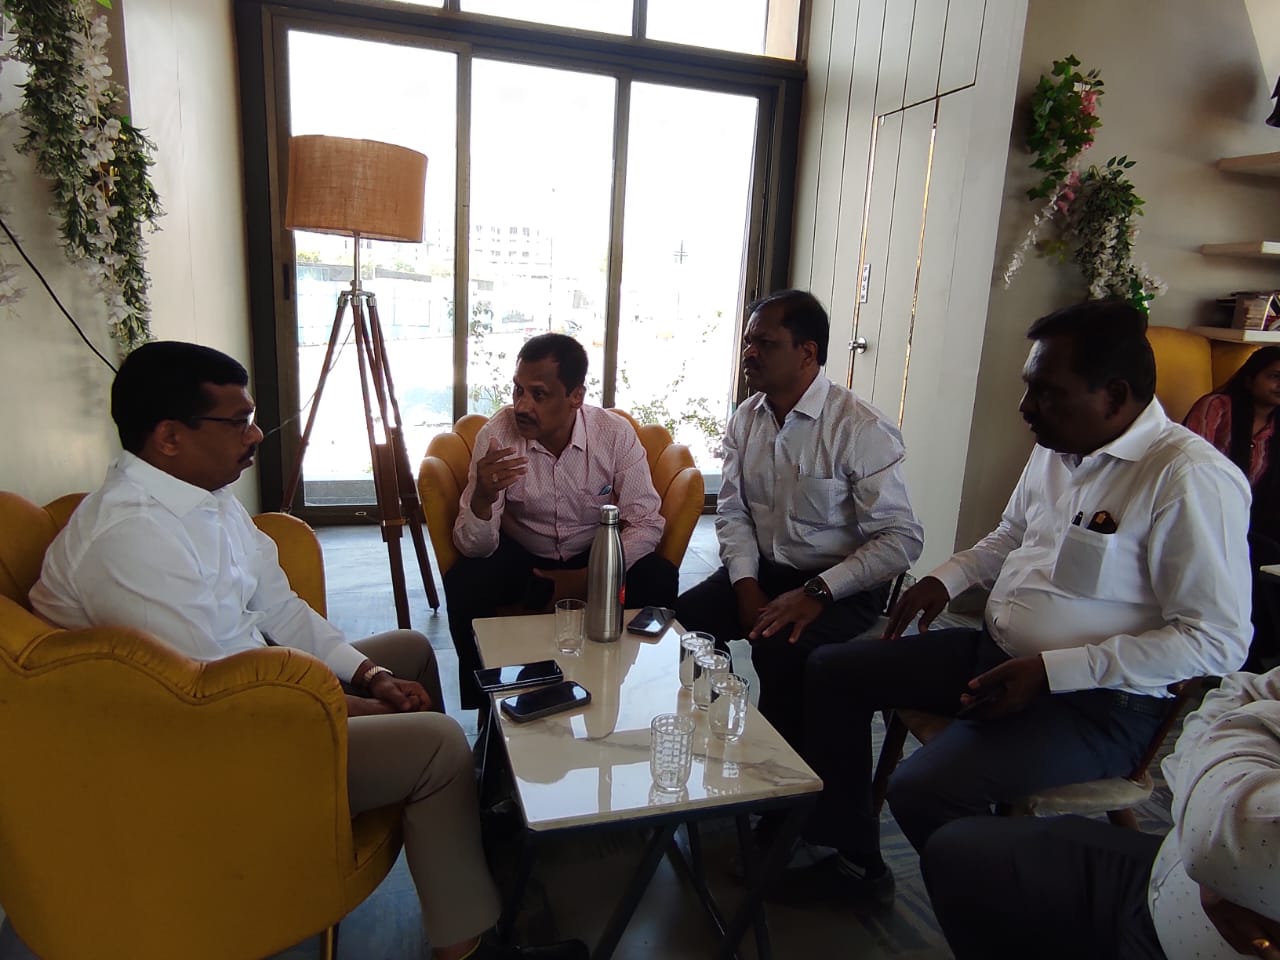 Pramod Nana Bhangire | महंमदवाडी परिसरातील सोसायट्यांचा पाणी प्रश्न सुटणार!    | आढावा बैठकीत प्रमोद नाना भानगिरे यांनी पाणीपुरवठा अधिकाऱ्यांना केल्या सूचना